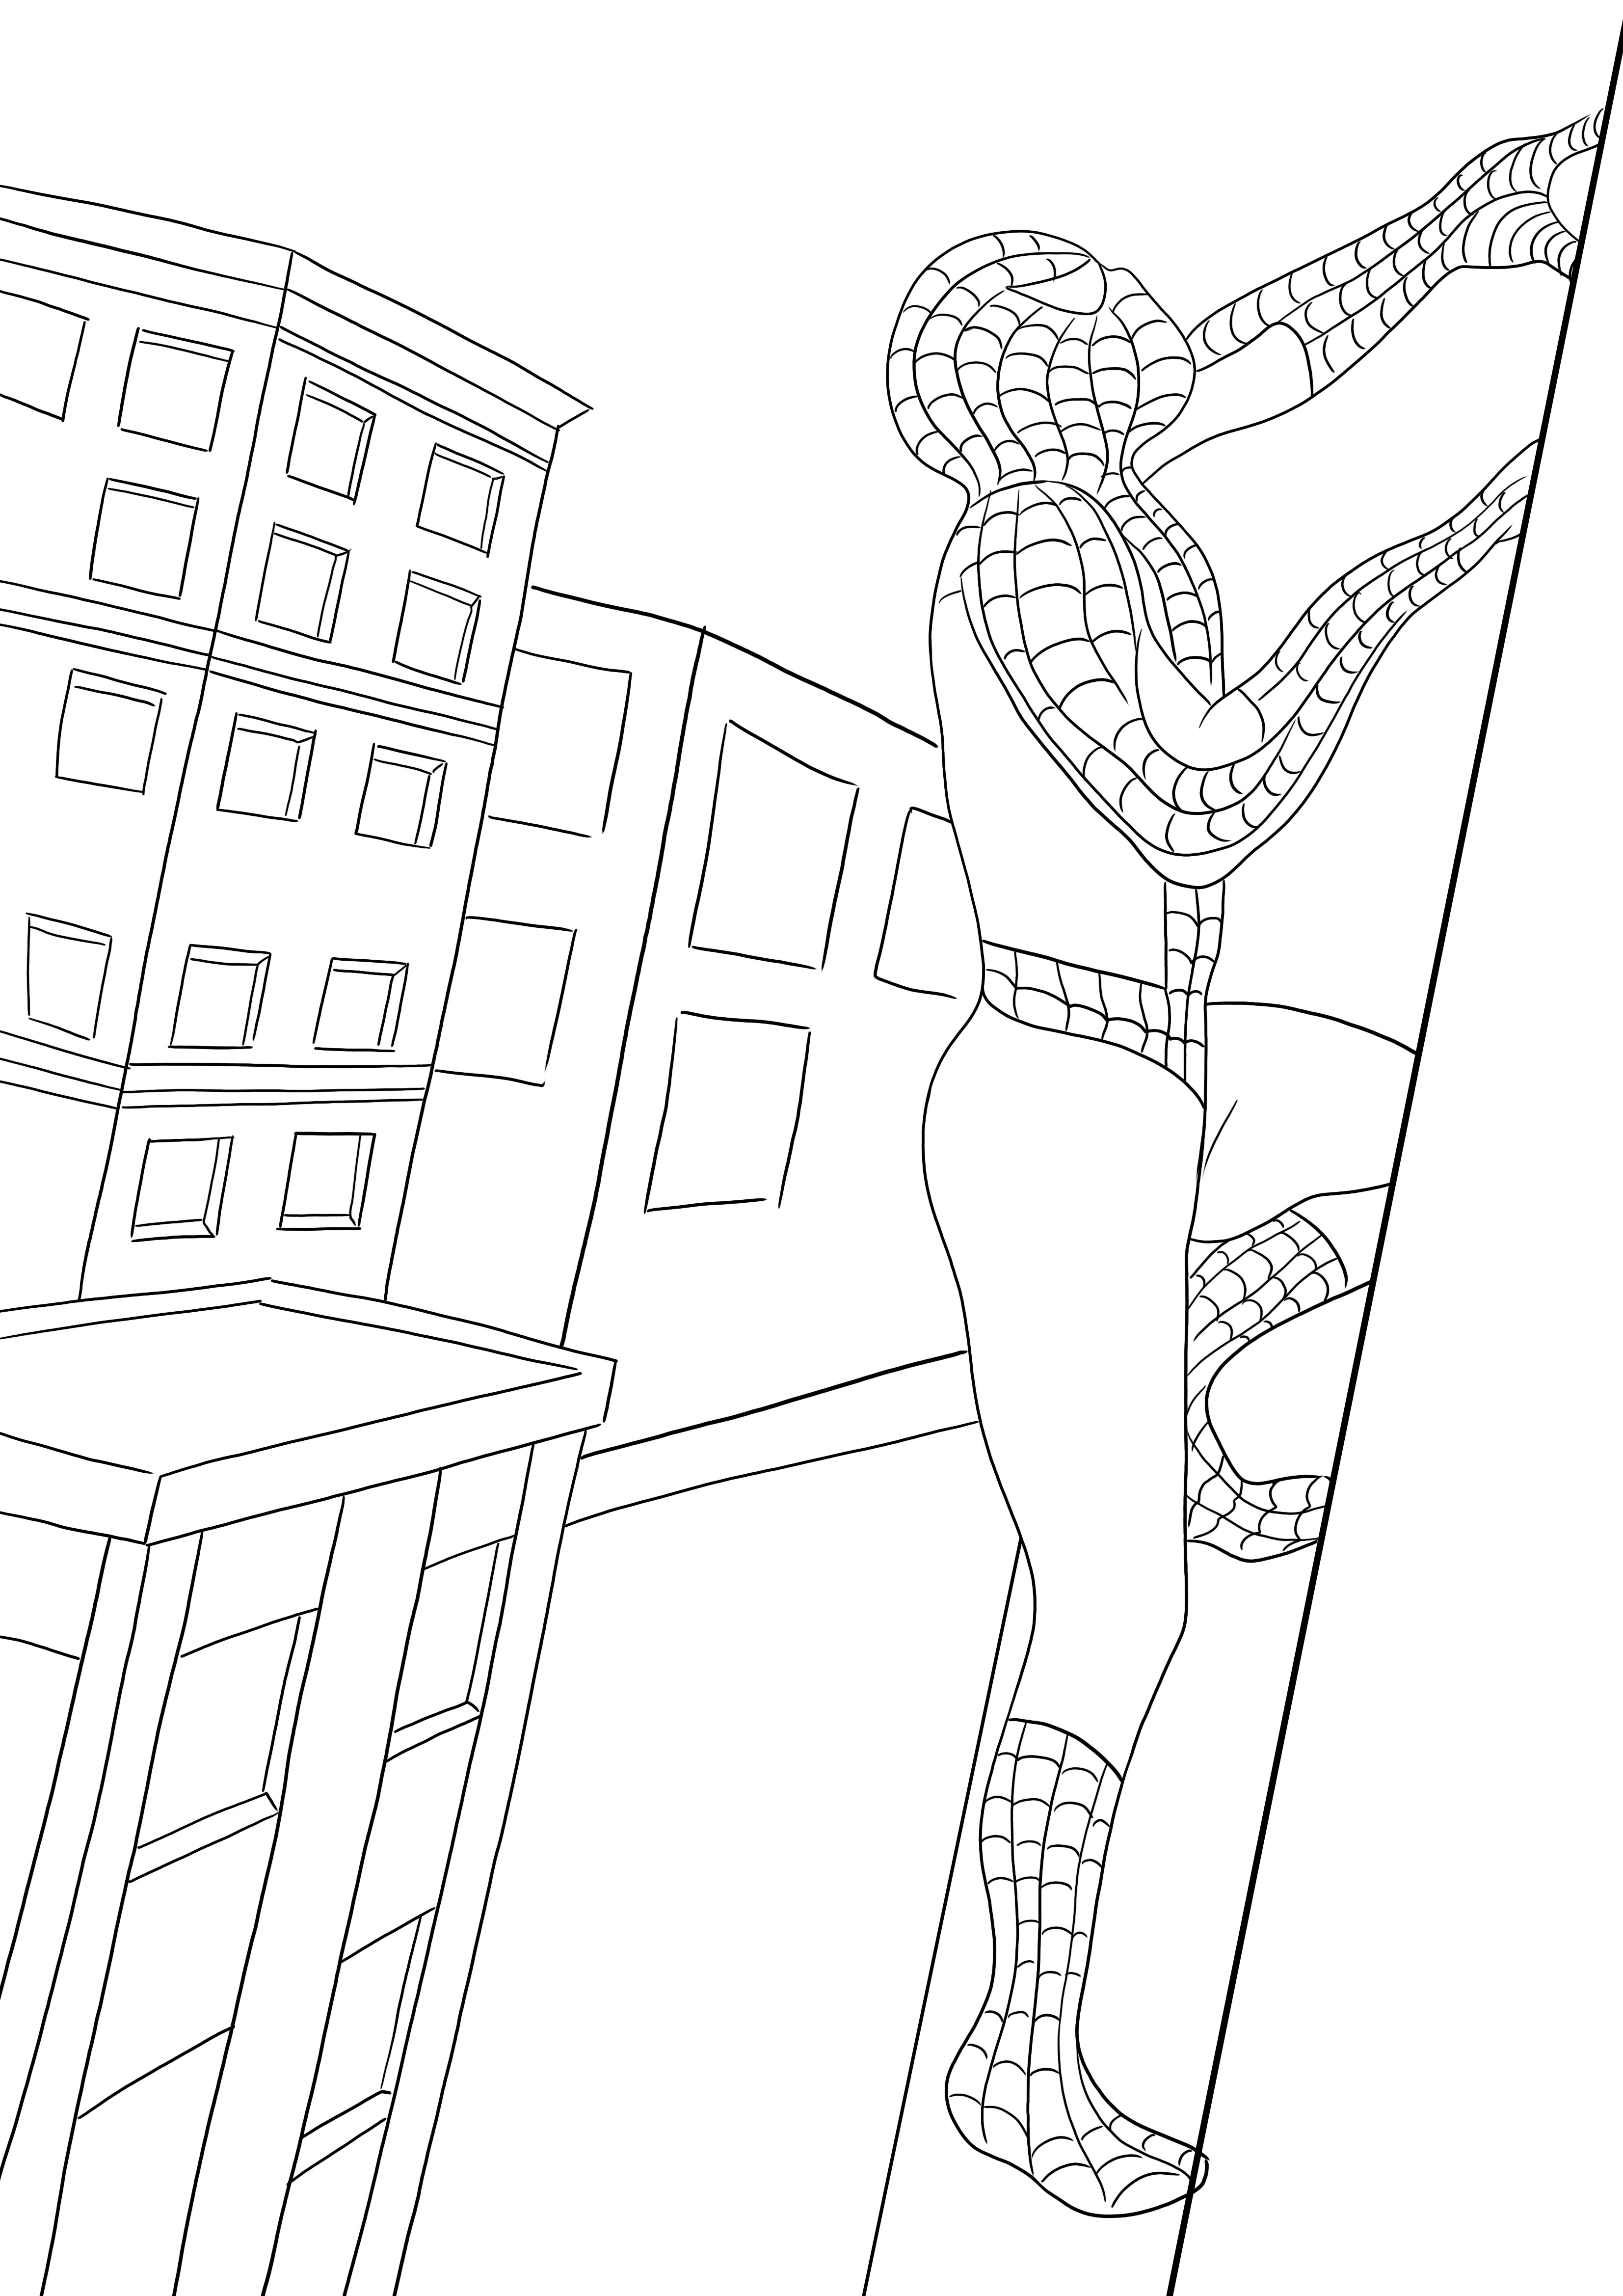 Uma impressão gratuita do Homem-Aranha escalando o prédio - as crianças podem colori-lo facilmente